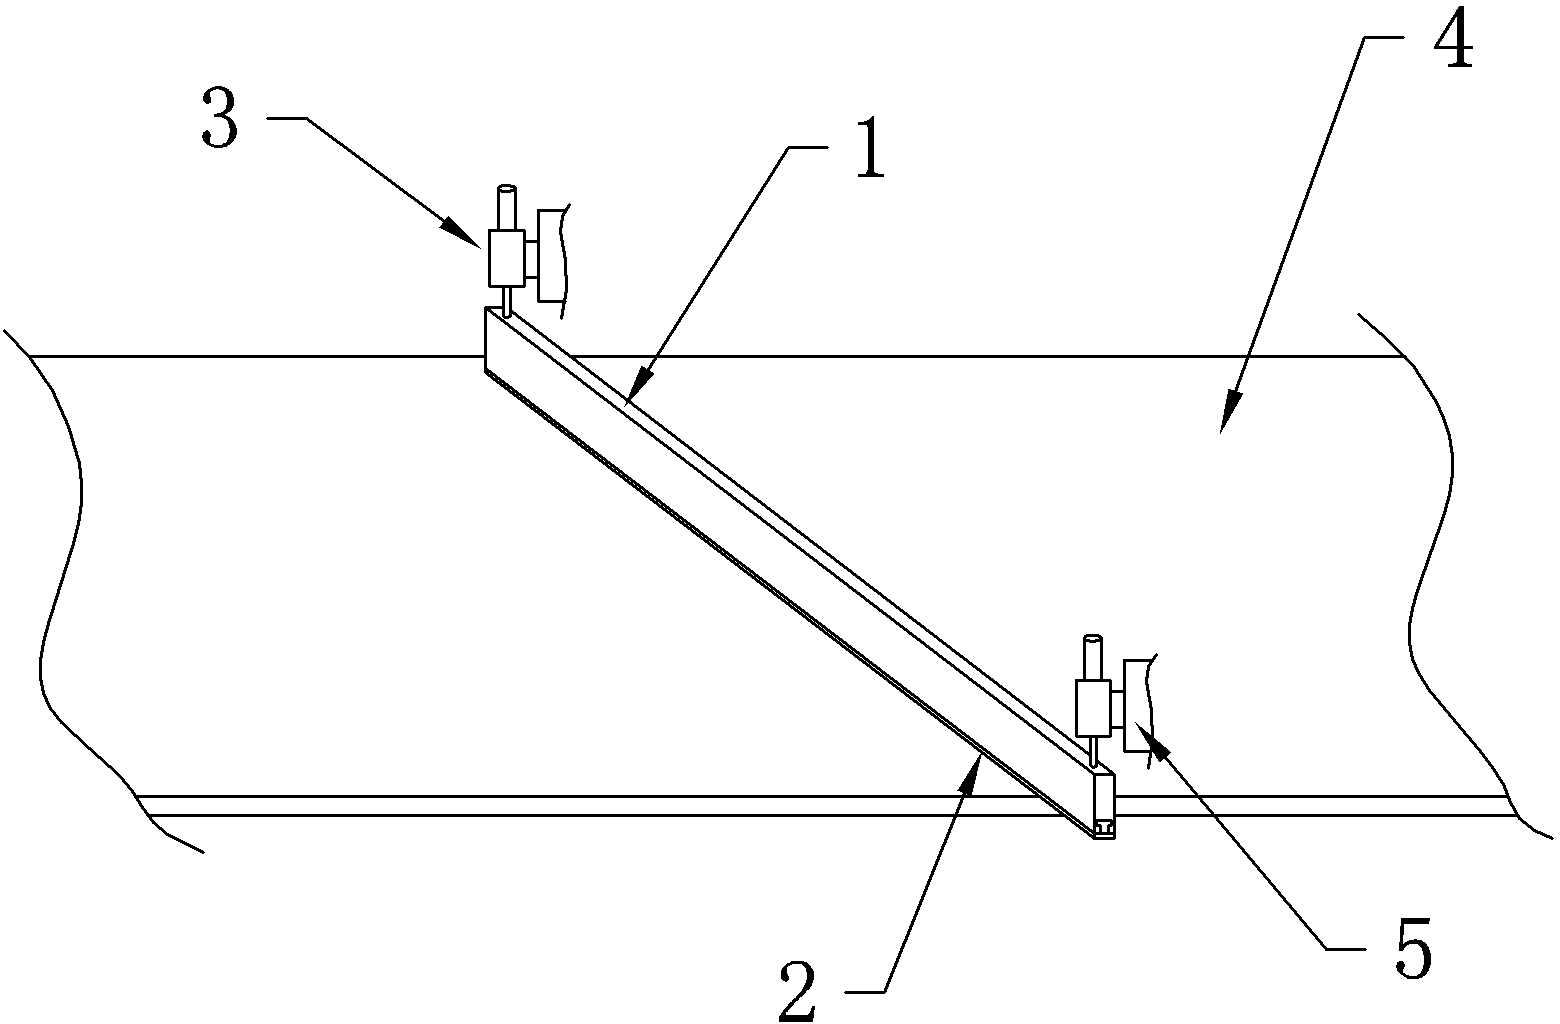 Cleaning mechanism of belt conveyor